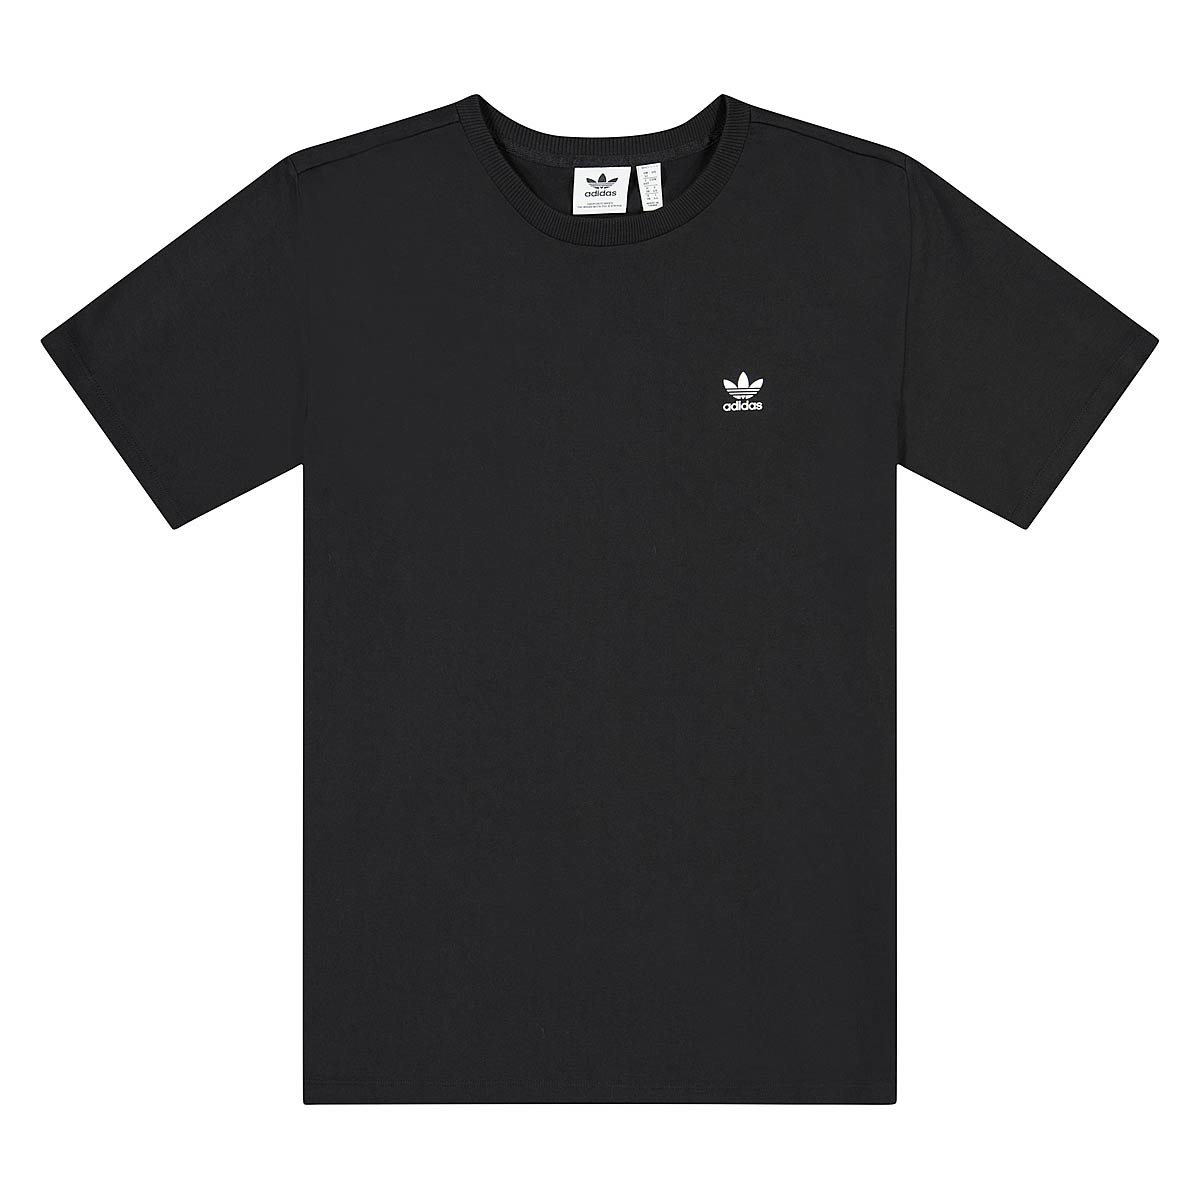 Adidas Originals Graphic T-Shirt Womens, Black